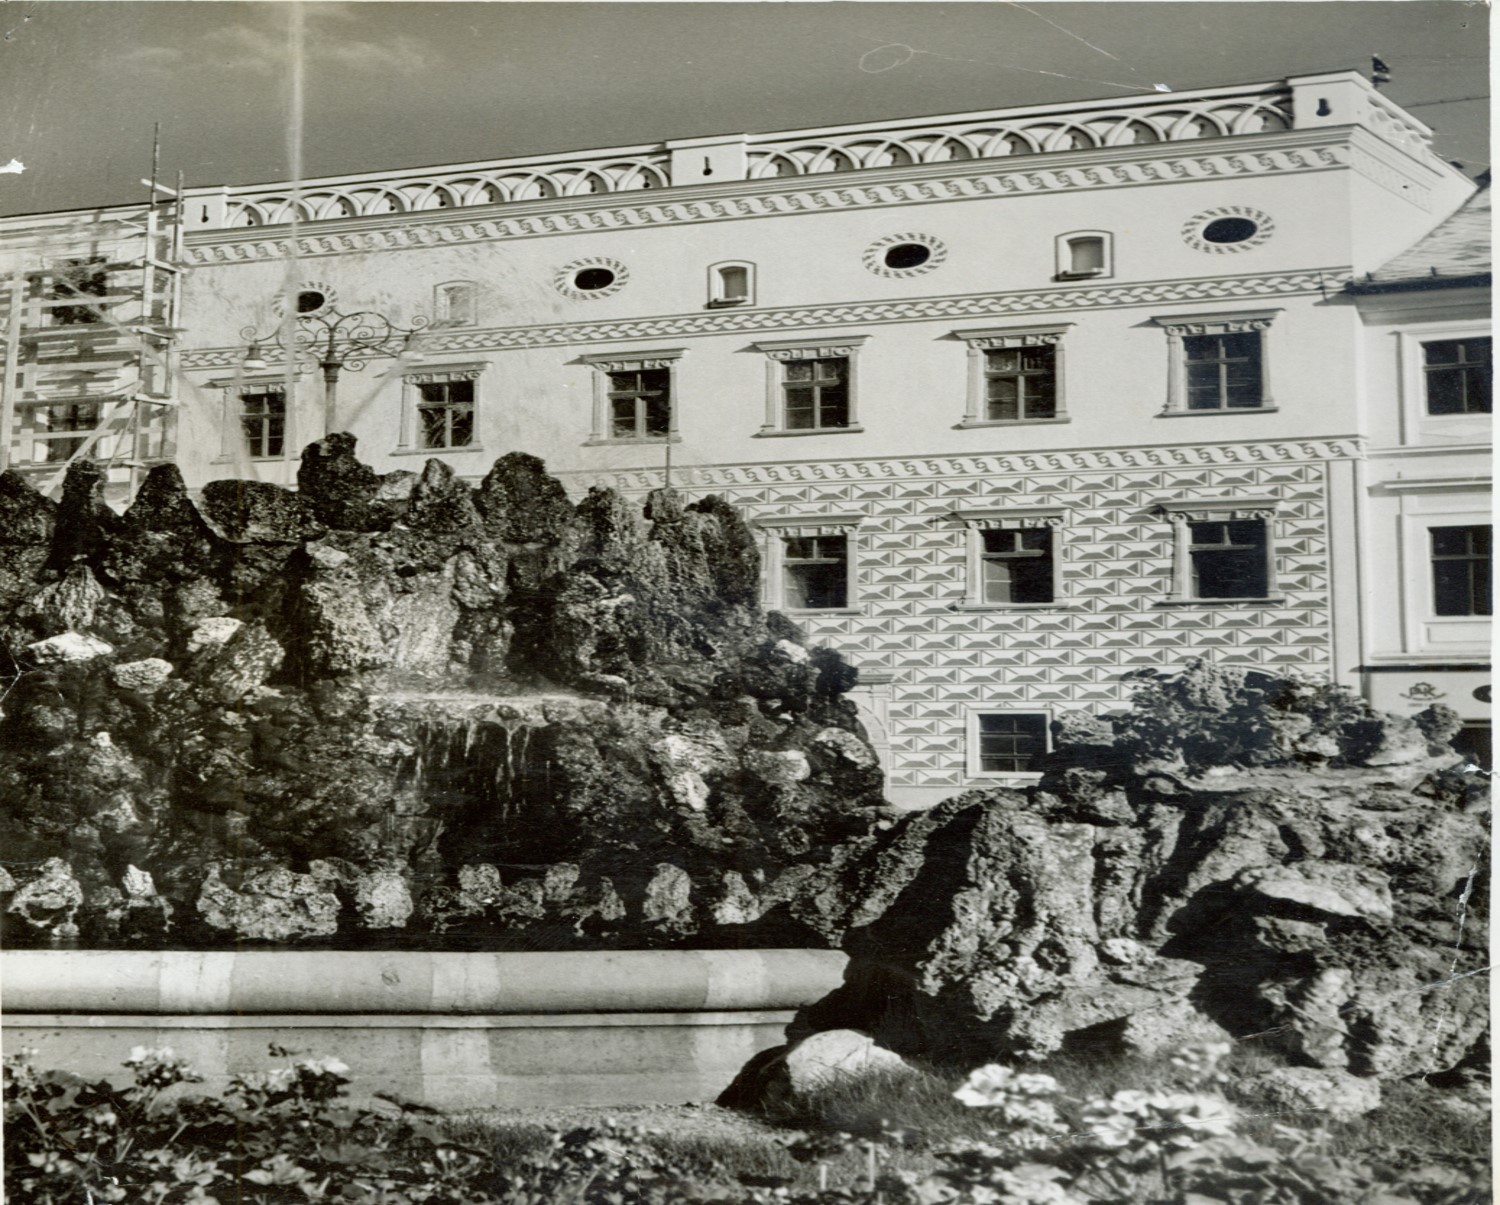 Thurzov dom po oprave pre účely Krajského múzea (dnes Stredoslovenské múzeum)